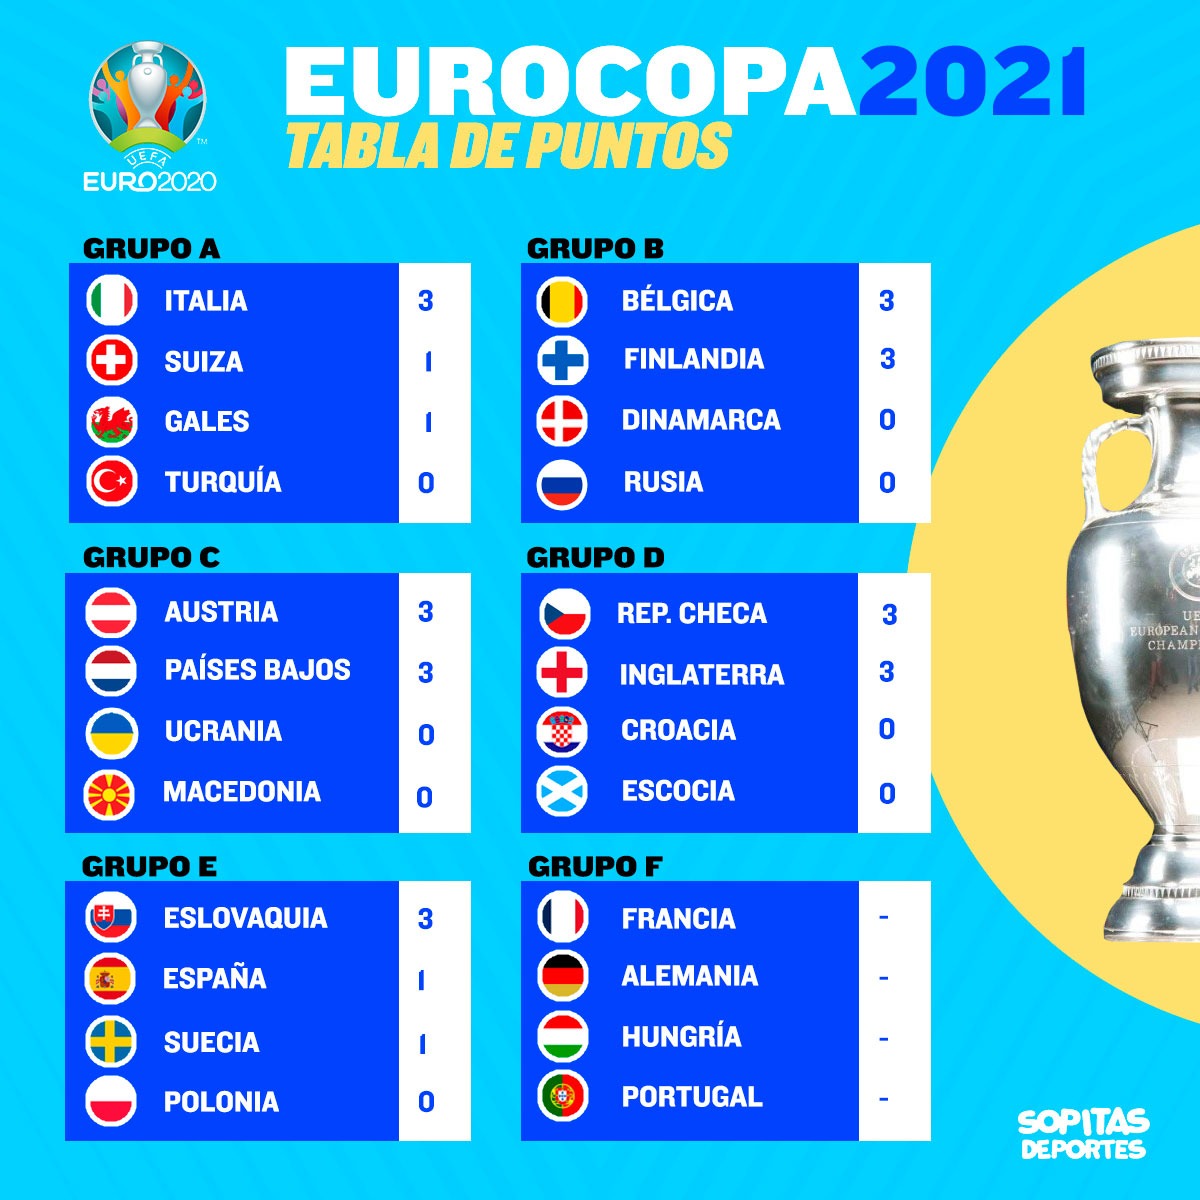 Golazos, osos y el primer partido sin goles: Lo que nos dejó el cuarto día de la Eurocopa 2020